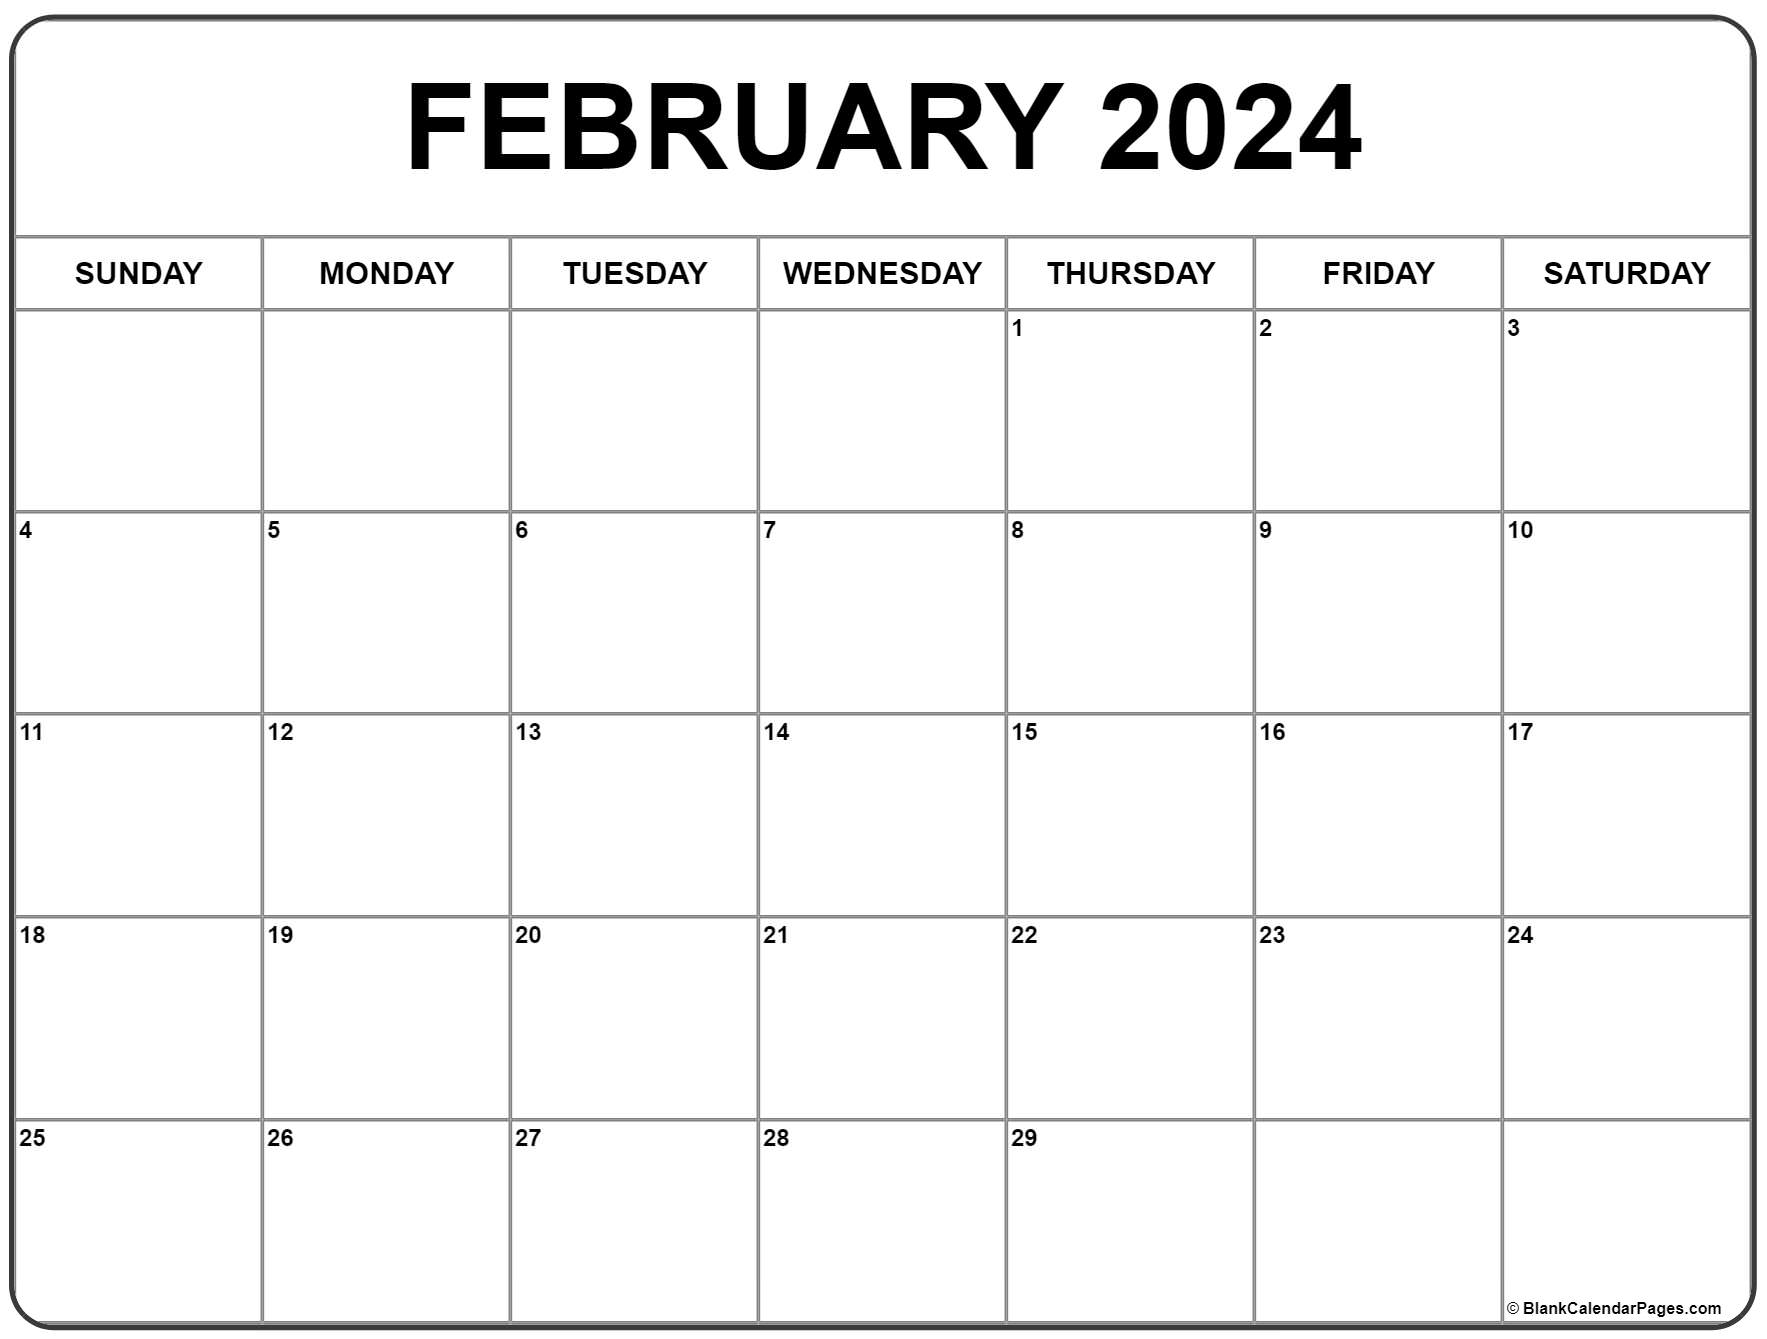 February 2024 Calendar | Free Printable Calendar for Monthly Calendar February 2024 Printable